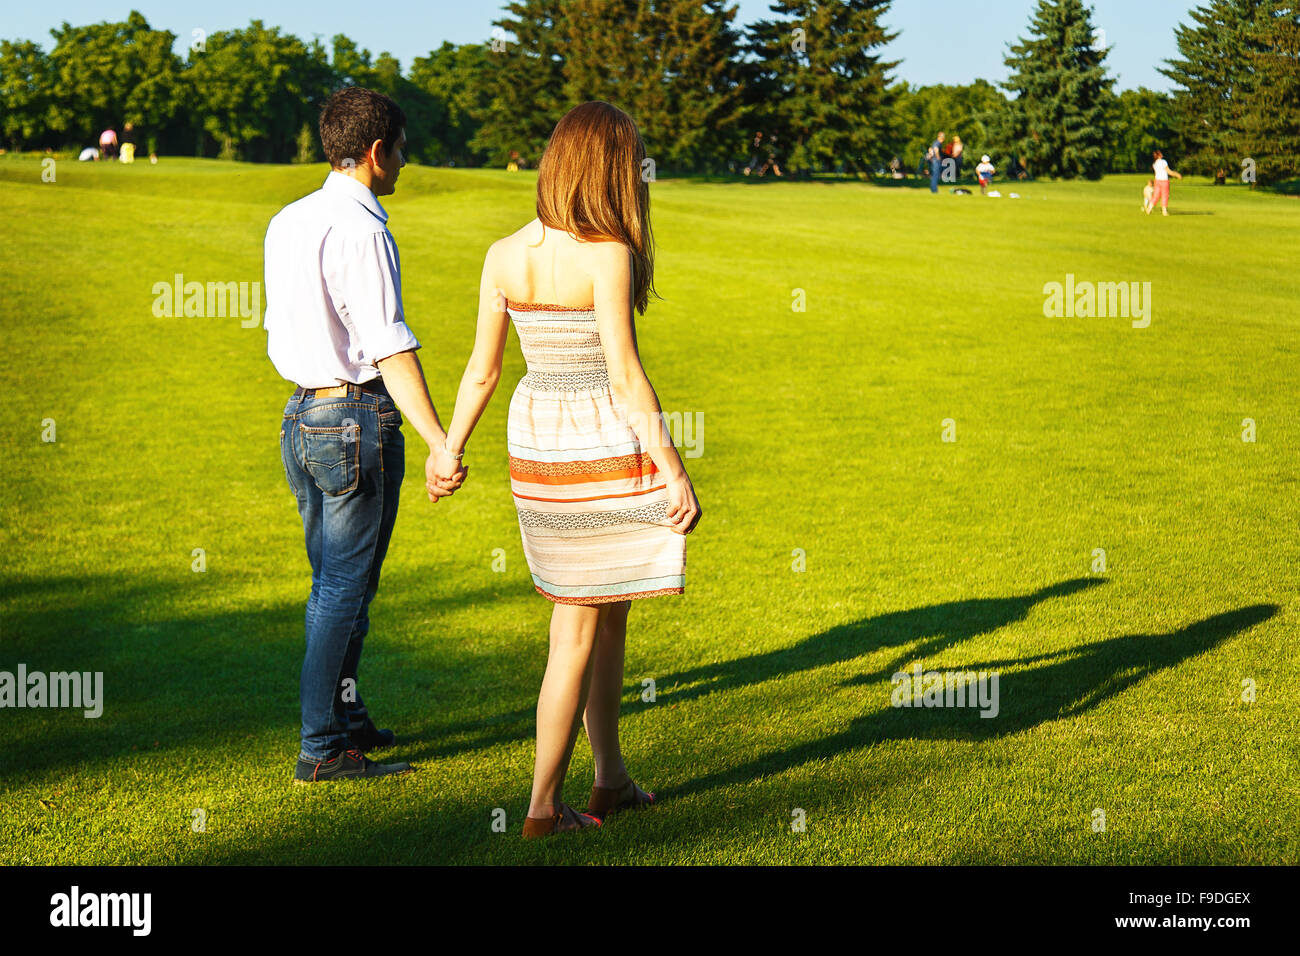 Los amantes de la mujer joven y caminar en el parque de verano Foto de stock